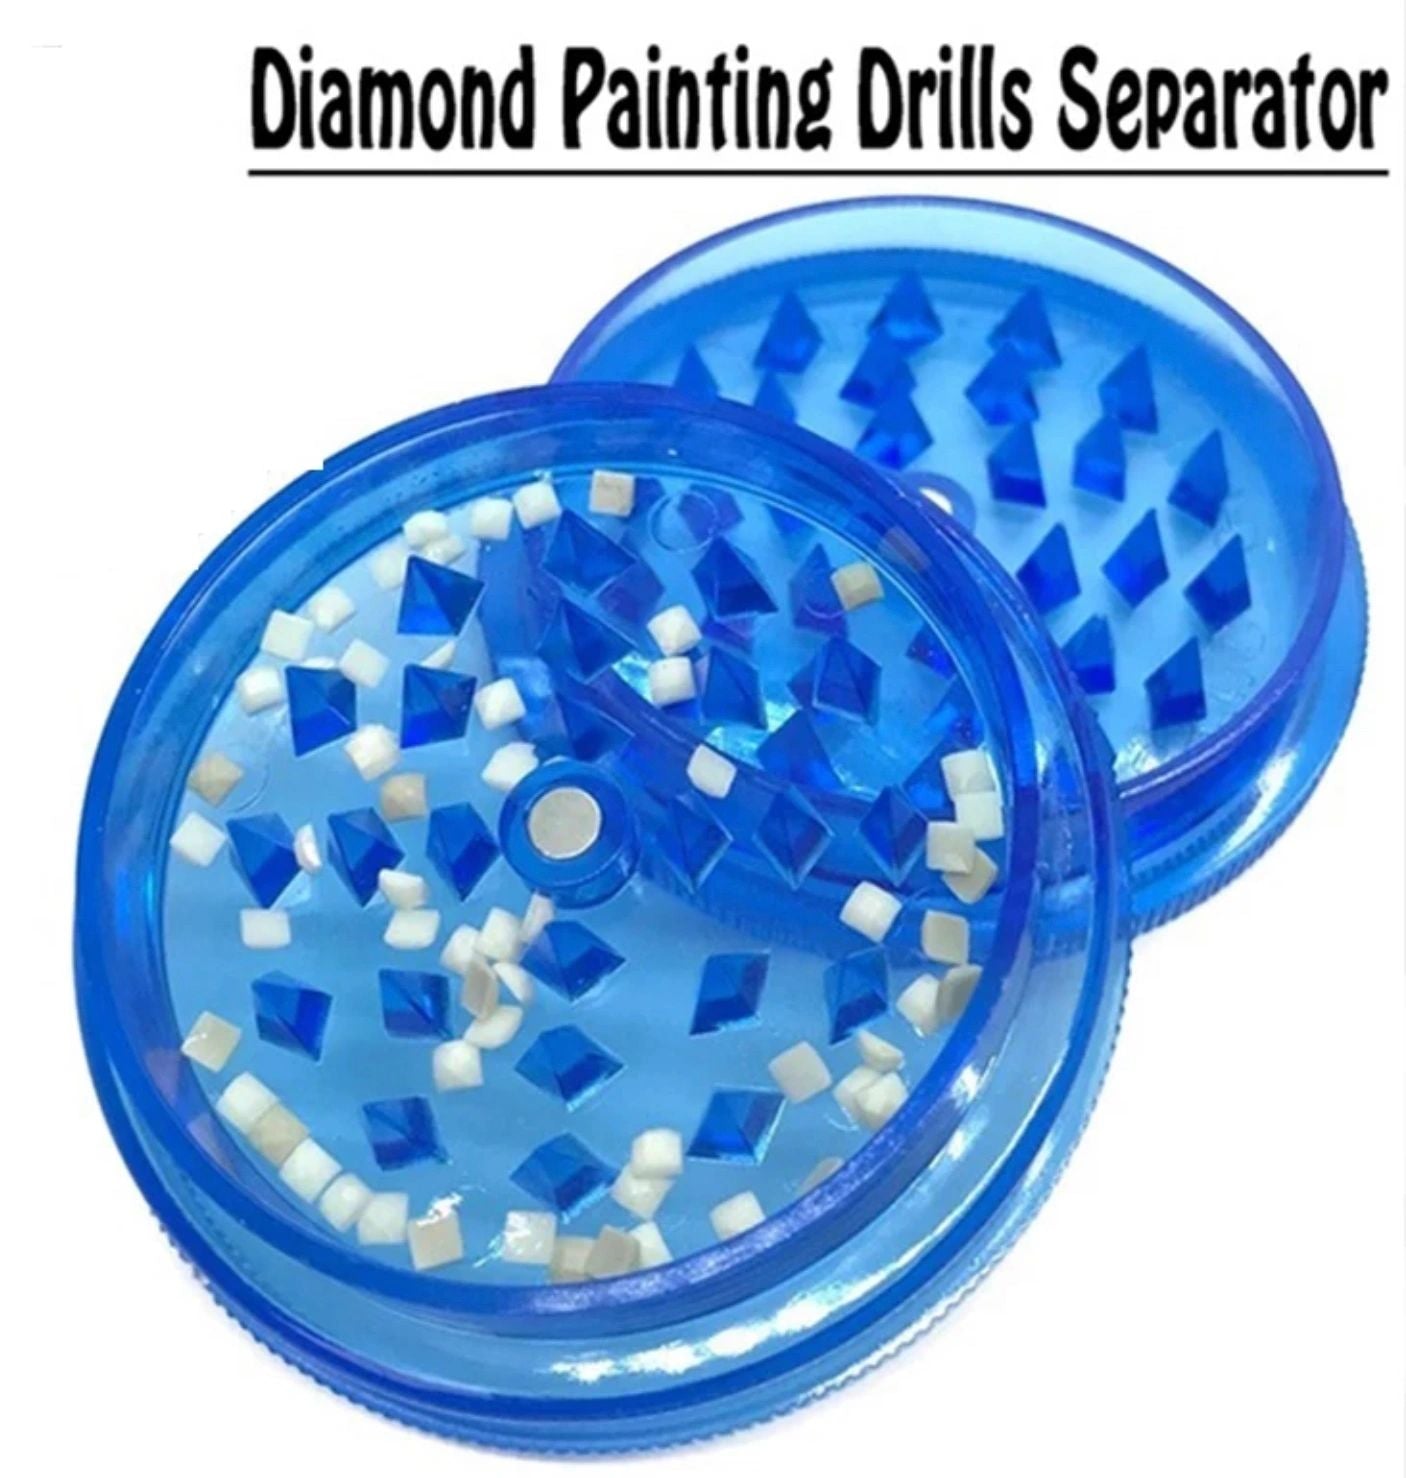 Diamond Painting Drill Separator